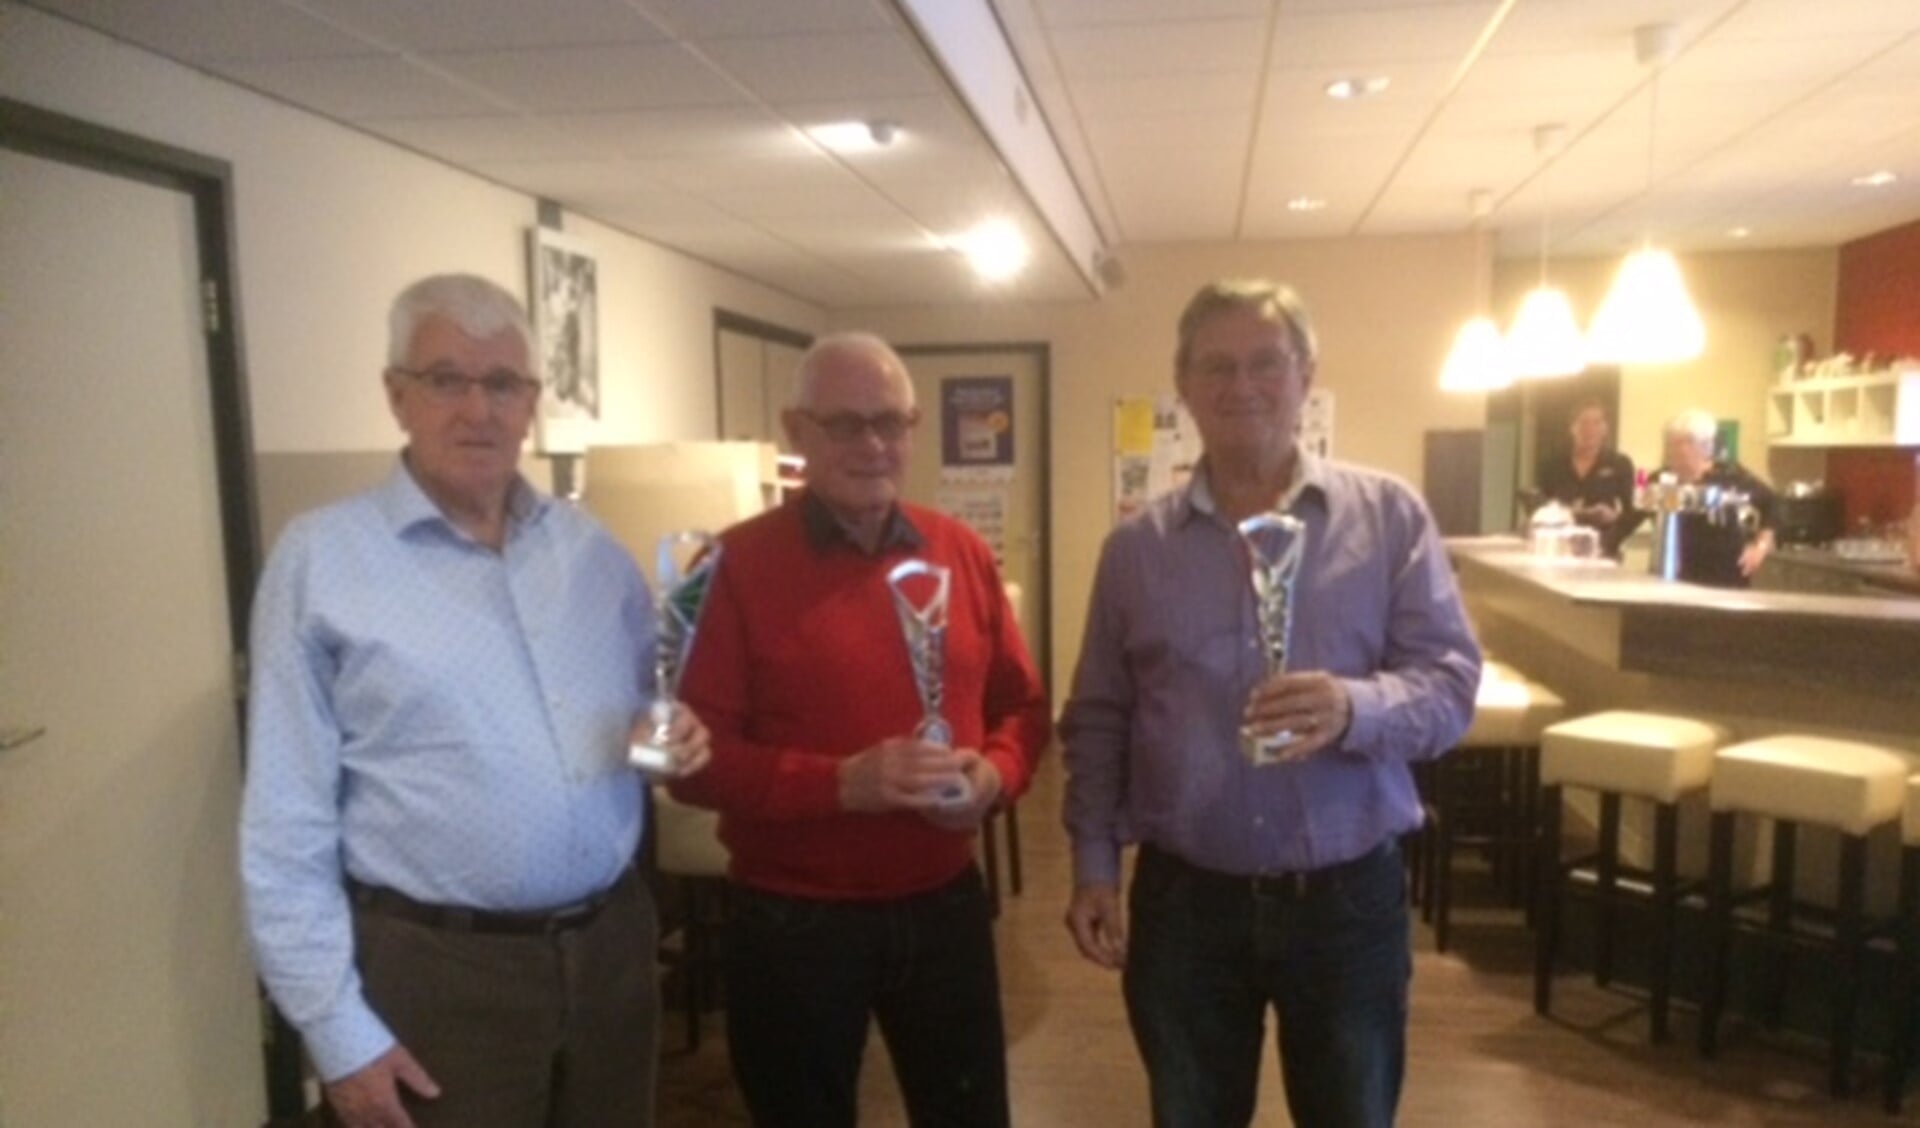 Cor Berkhout, Aad Quak en Wim Pothof haalden het podium in de competitie van koersbalvereniging Westvoorne van 2017. 